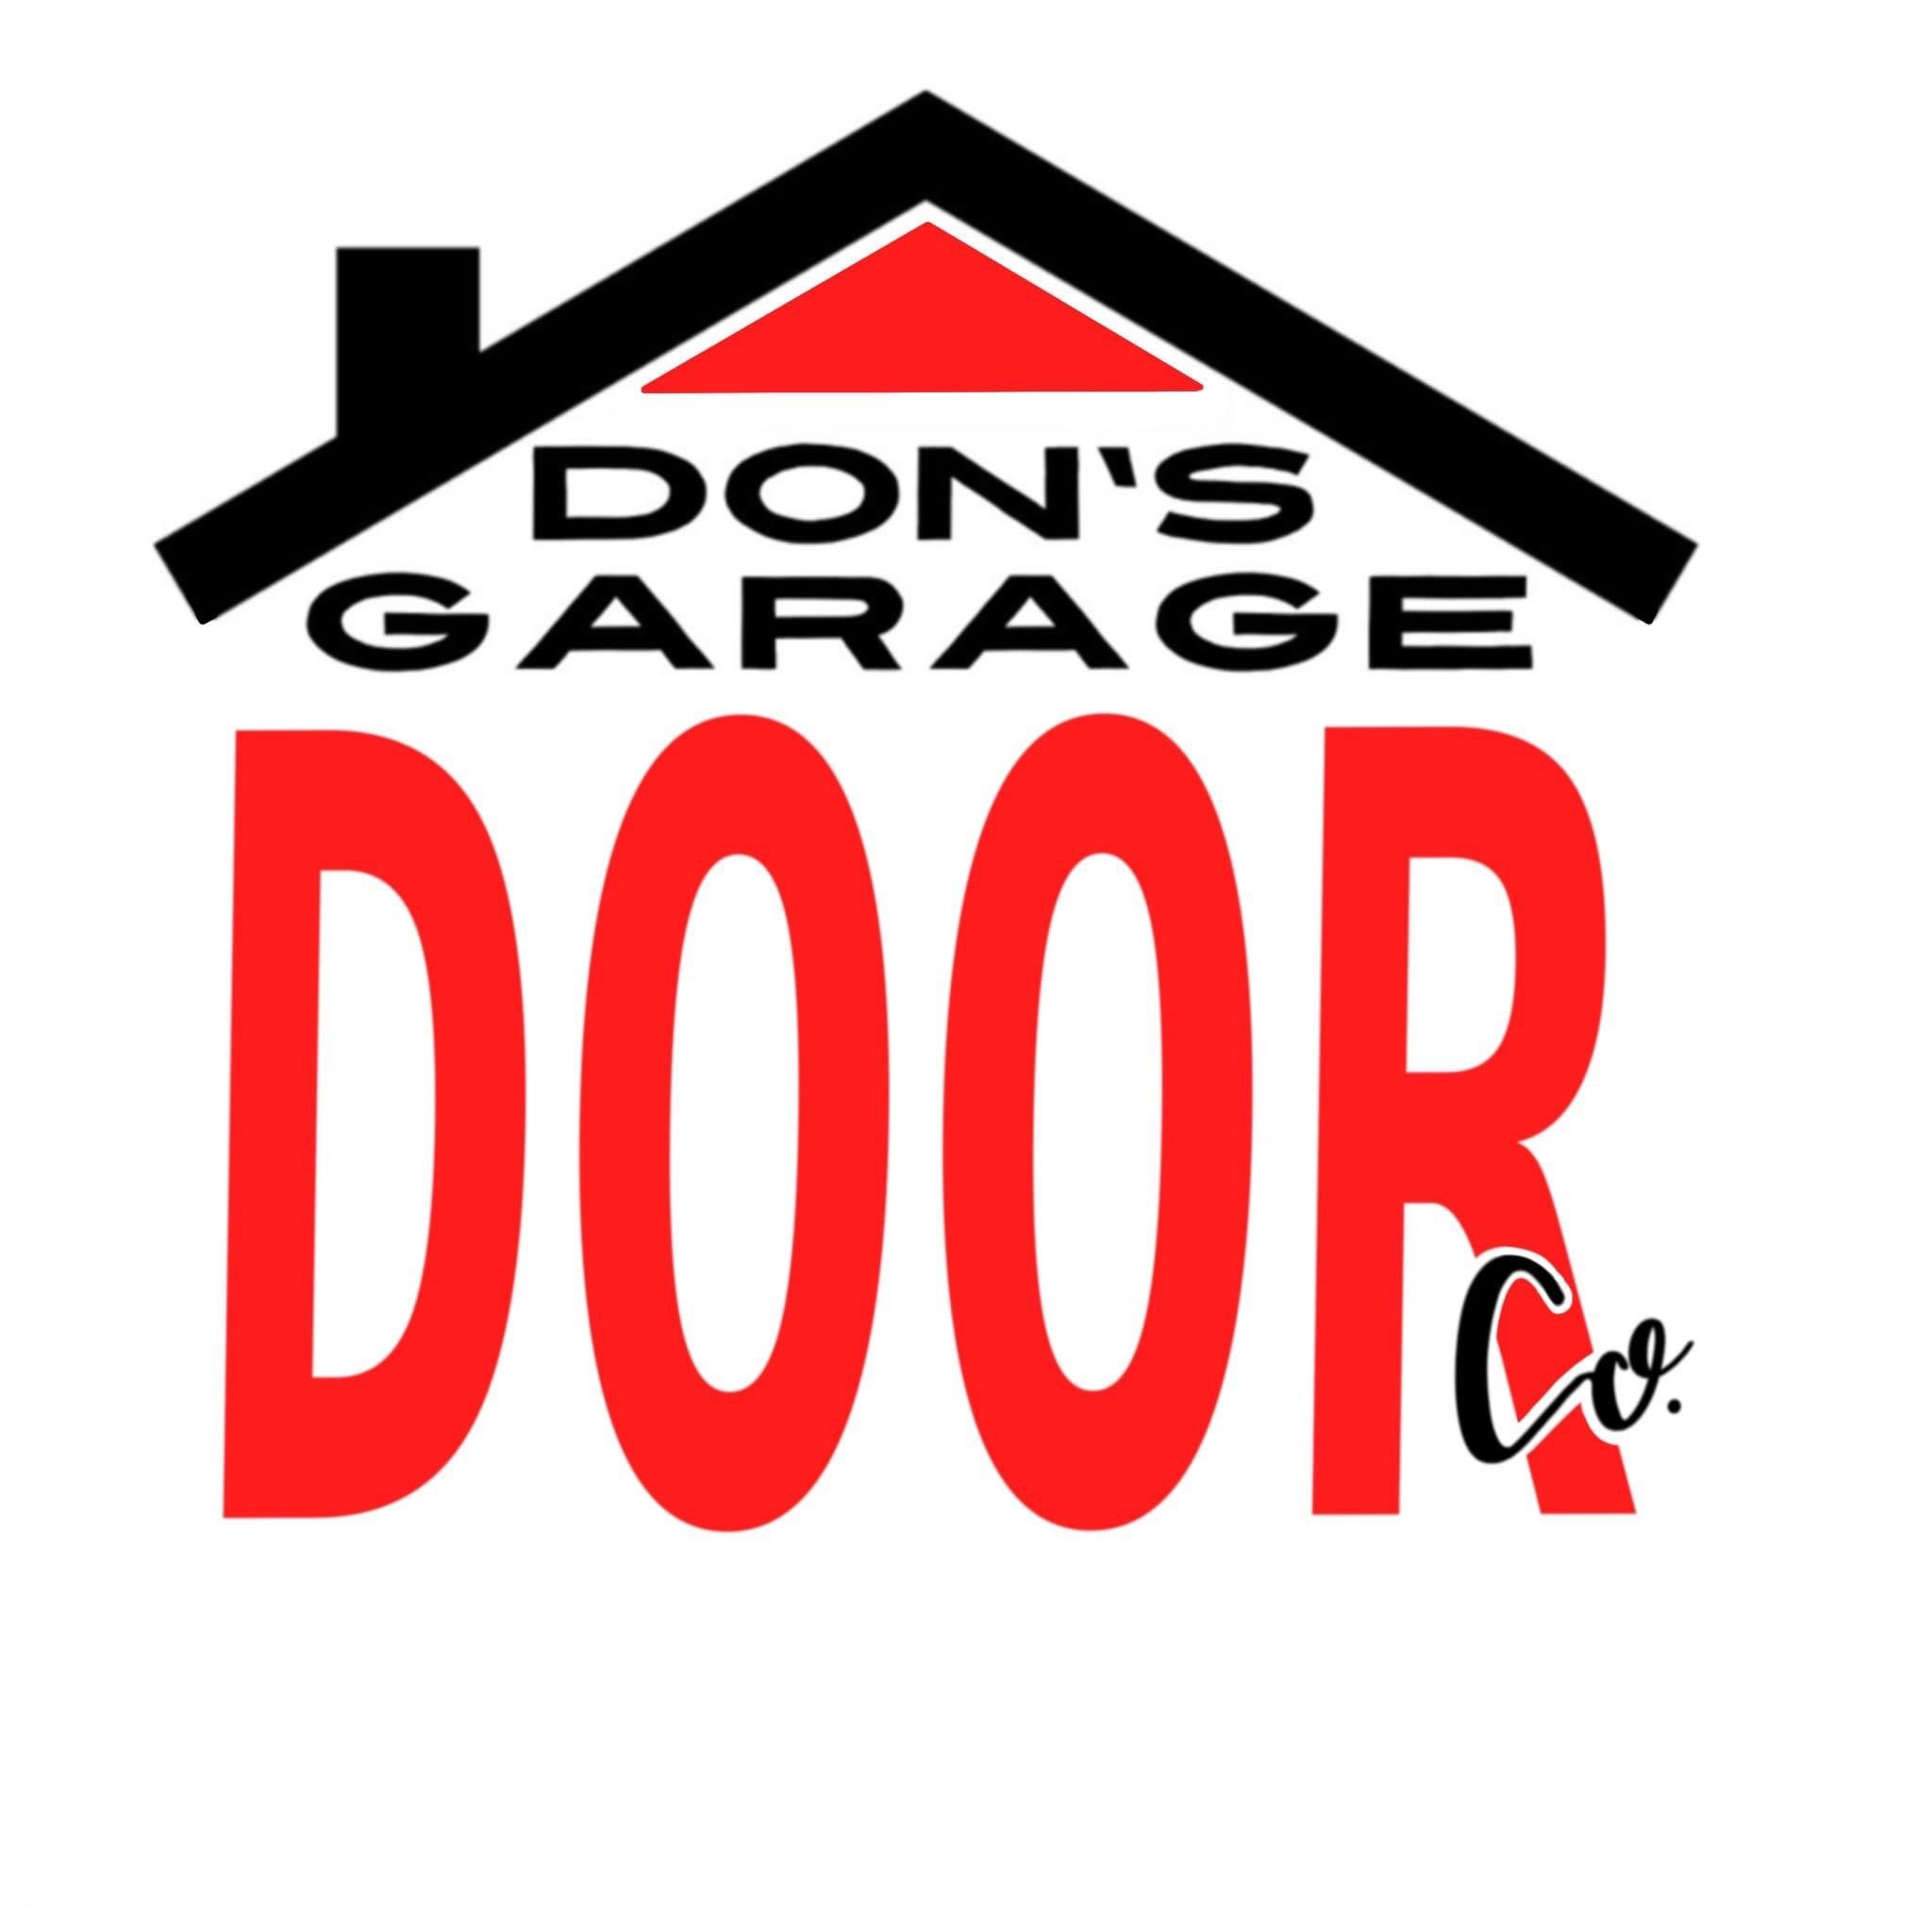 Don's Garage Door Company